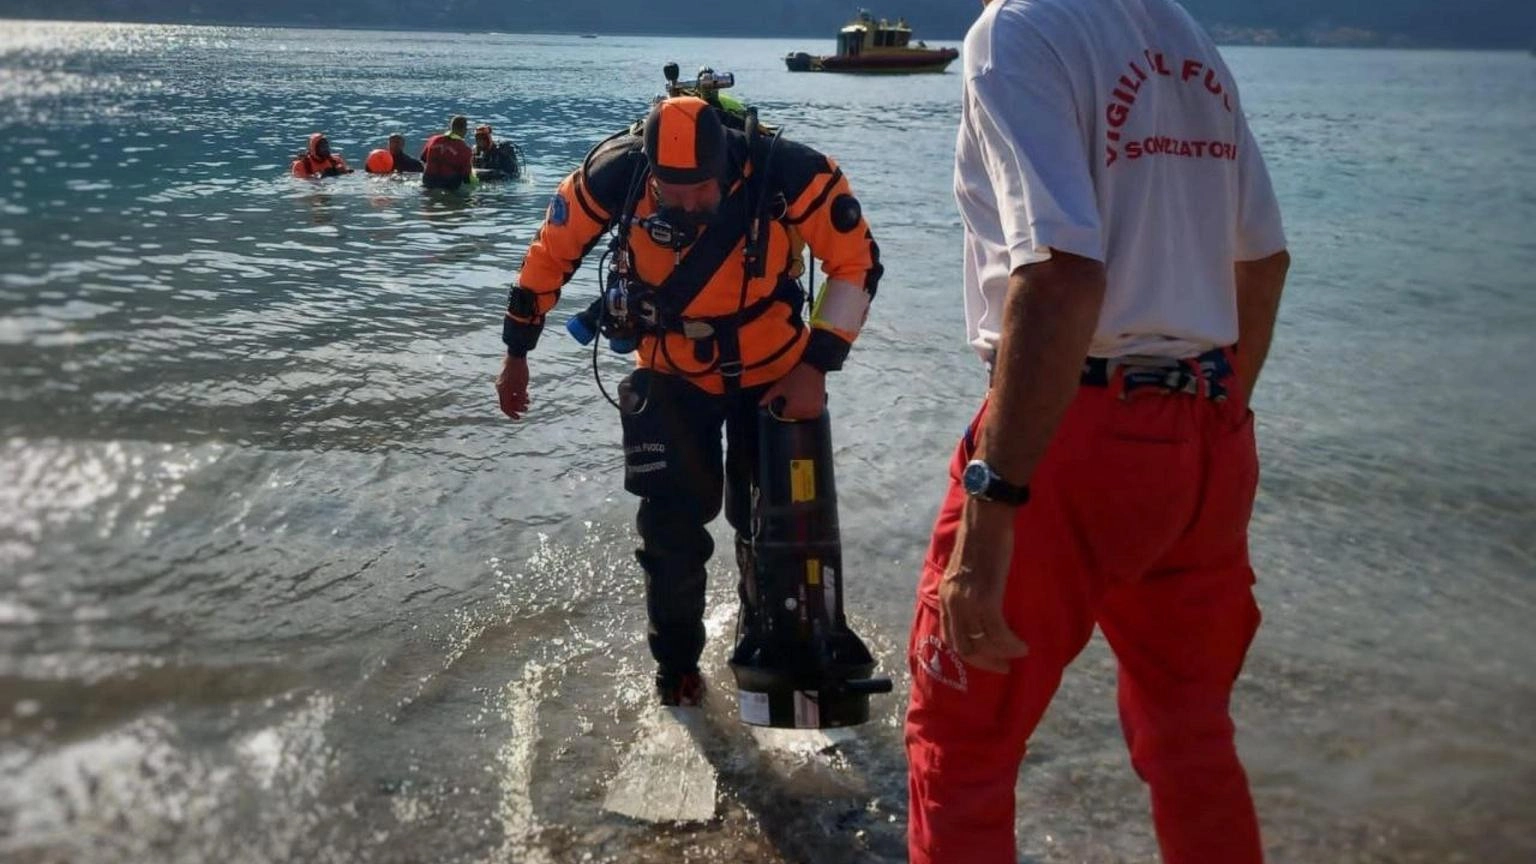 Morto 13enne recuperato a 10 metri profondità nel lago di Como